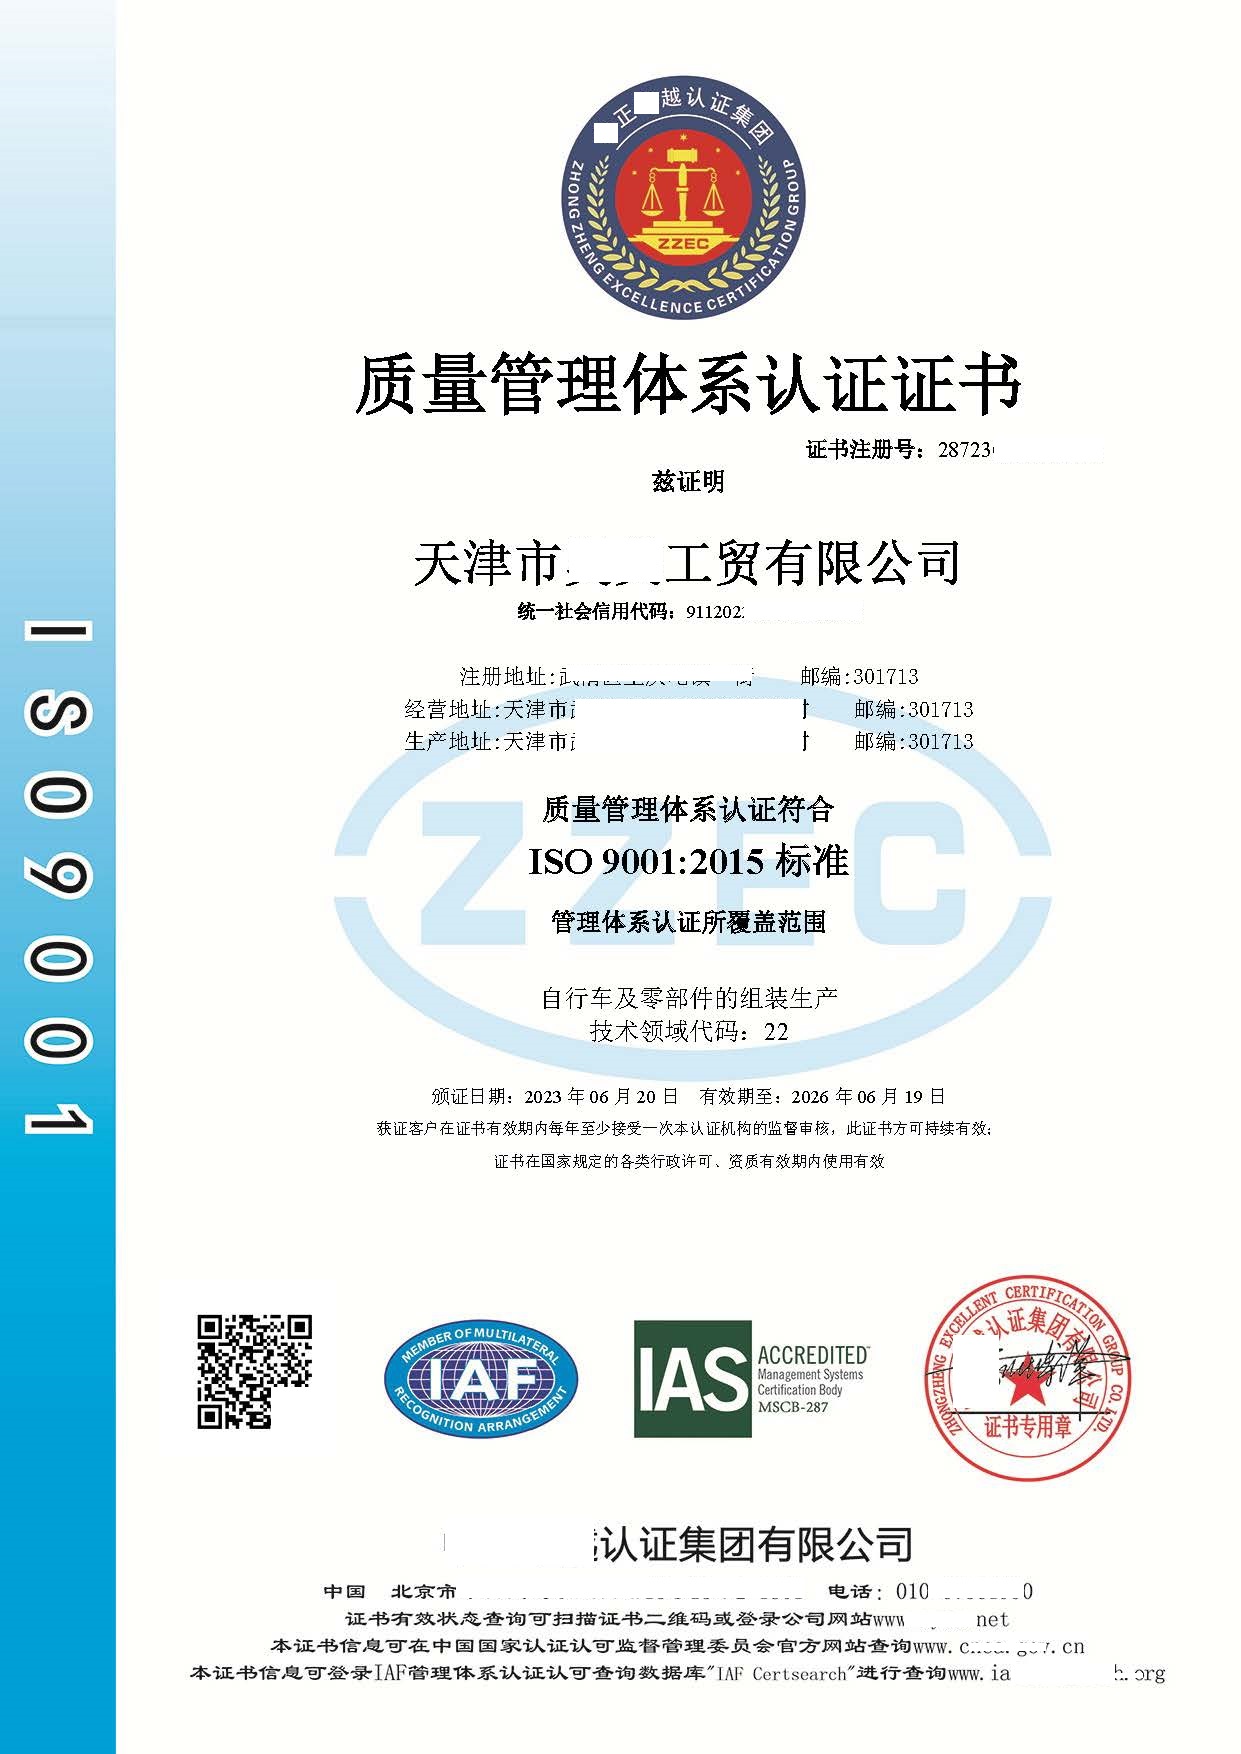 恭喜天津市**工贸有限公司获得质量管理体系咨询证书